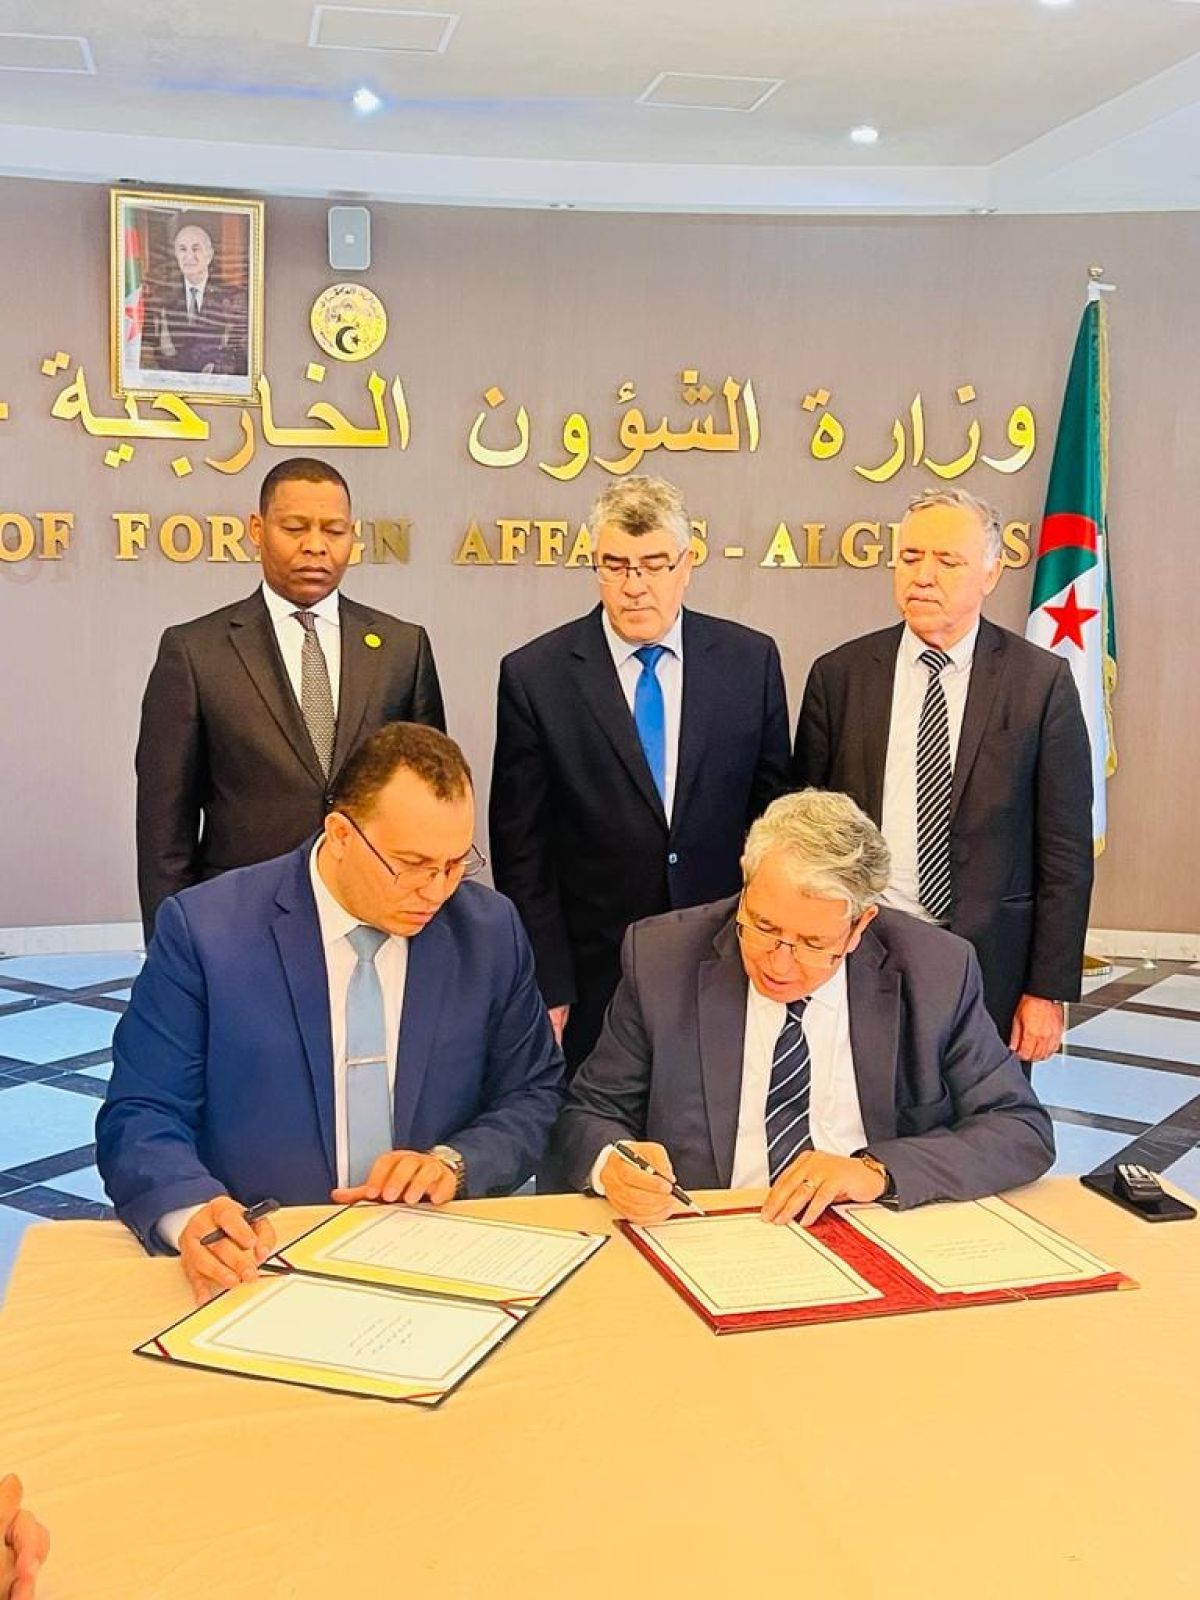 الجزائر تعلن إعادة افتتاح المعبر الحدودي غدامس الدبداب بشكل رسمي يوم الثلاثاء القادم